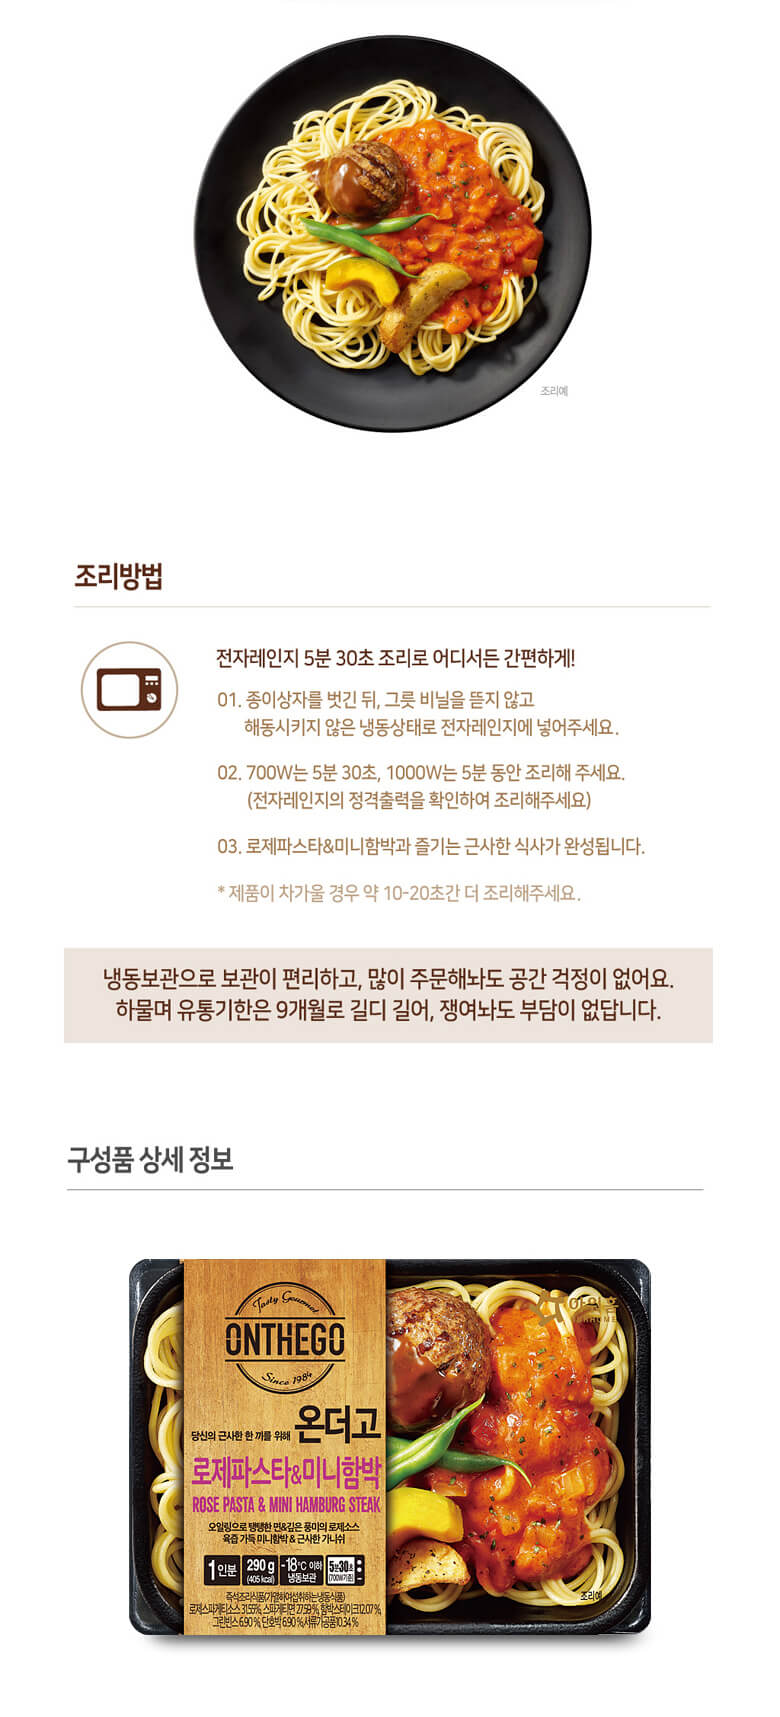 韓國食品-[Ourhome] Onthego 迷你漢堡玫瑰意粉 290g